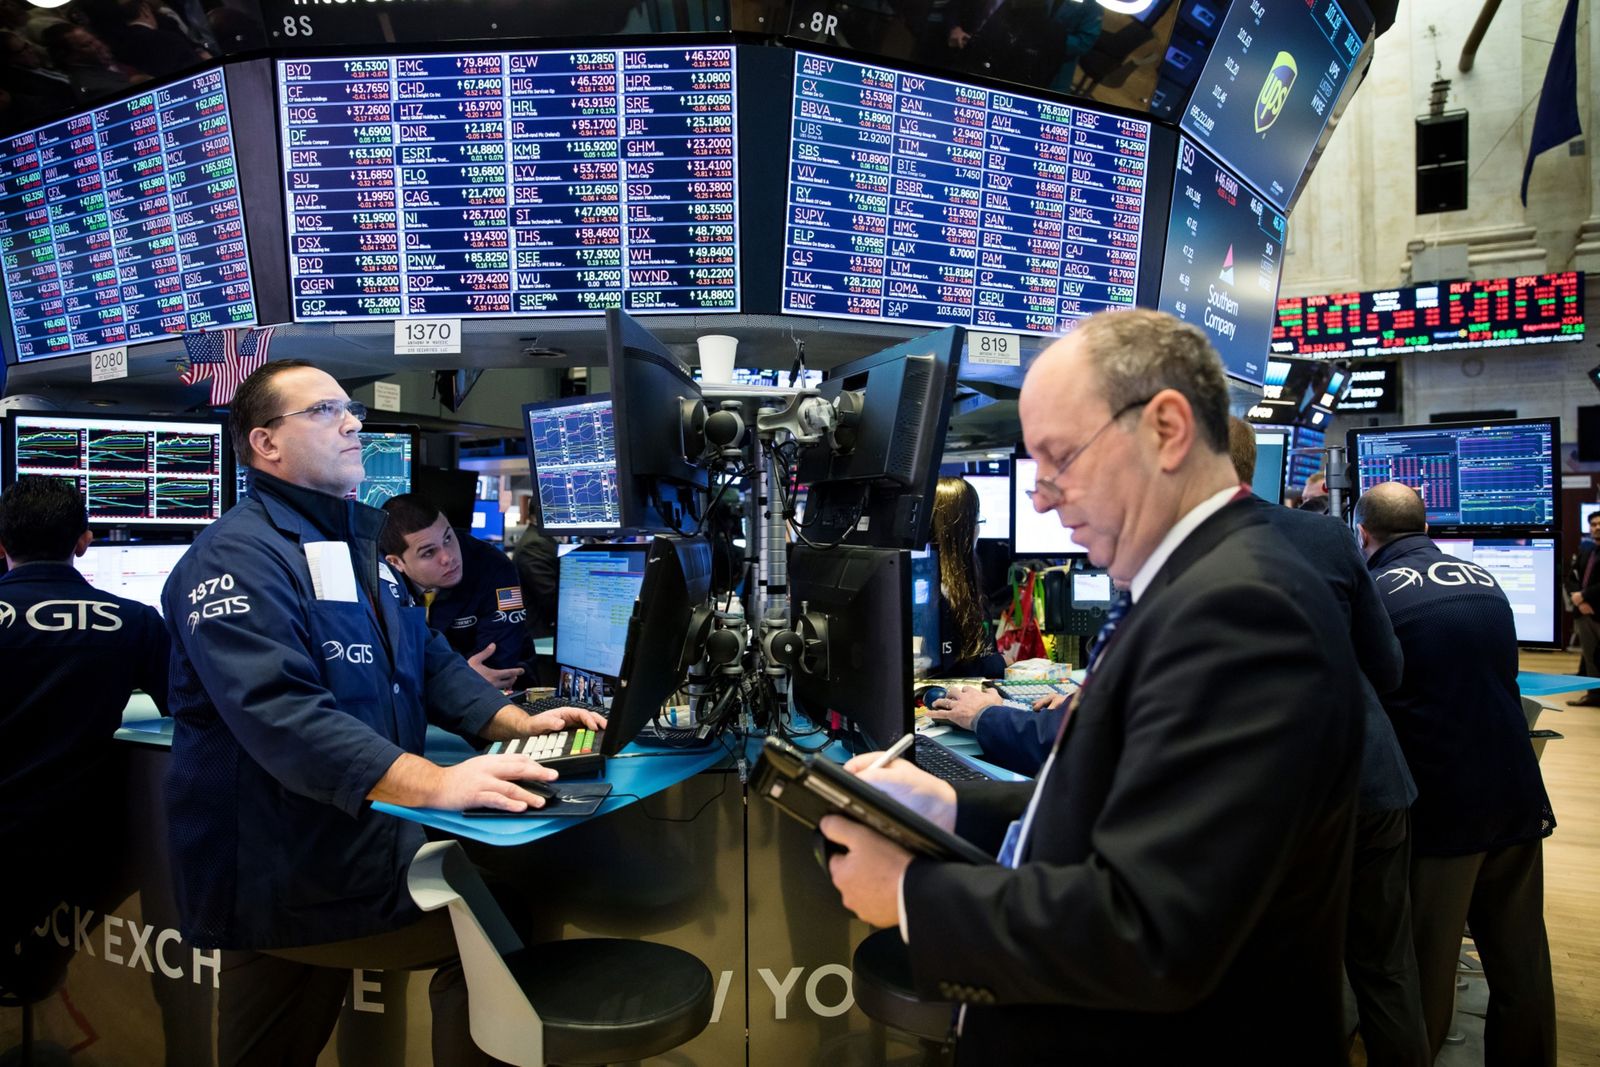 الأسهم الأميركية تقفز مدعومة بنتائج الشركات ومراجعة خطط ترَس